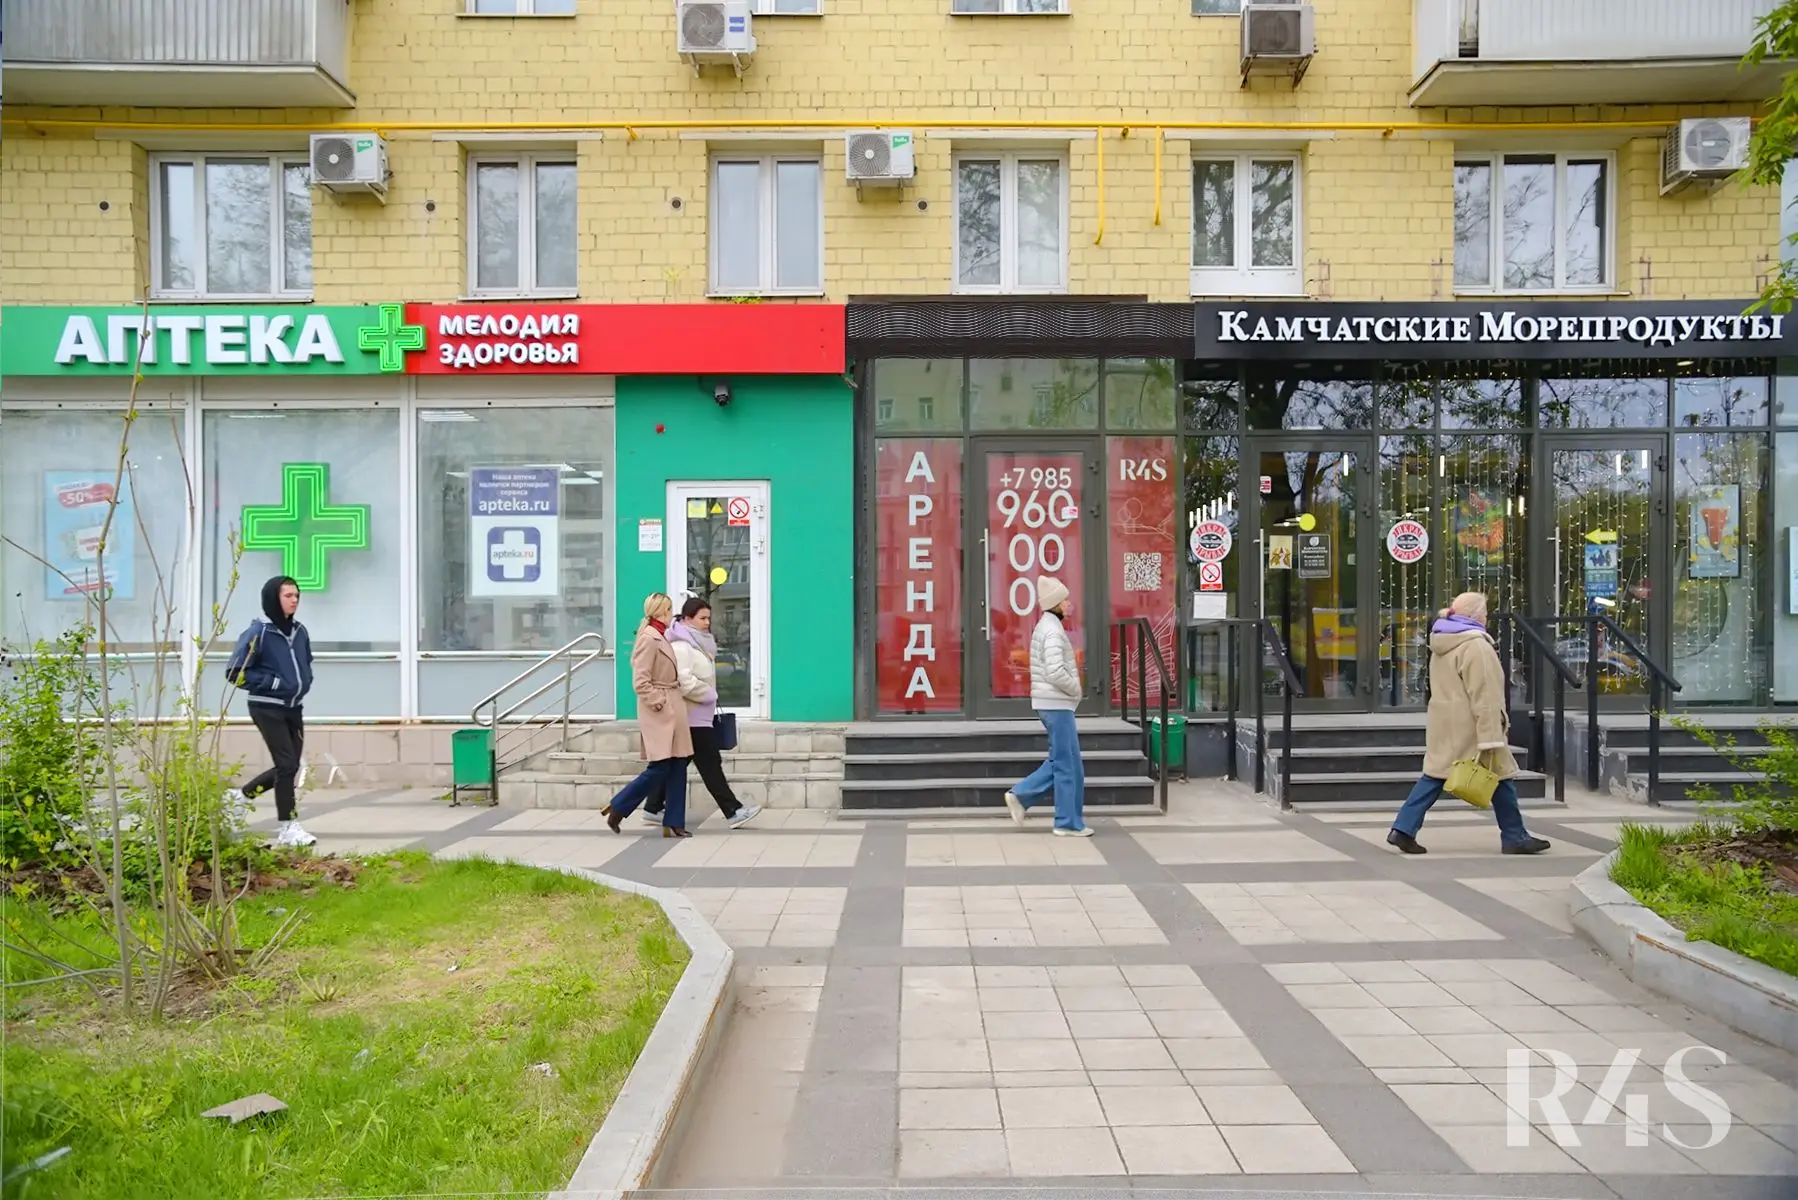 Продажа готового арендного бизнеса площадью 40.5 м2 в Москве: Ленинградское шоссе, 9к1 R4S | Realty4Sale